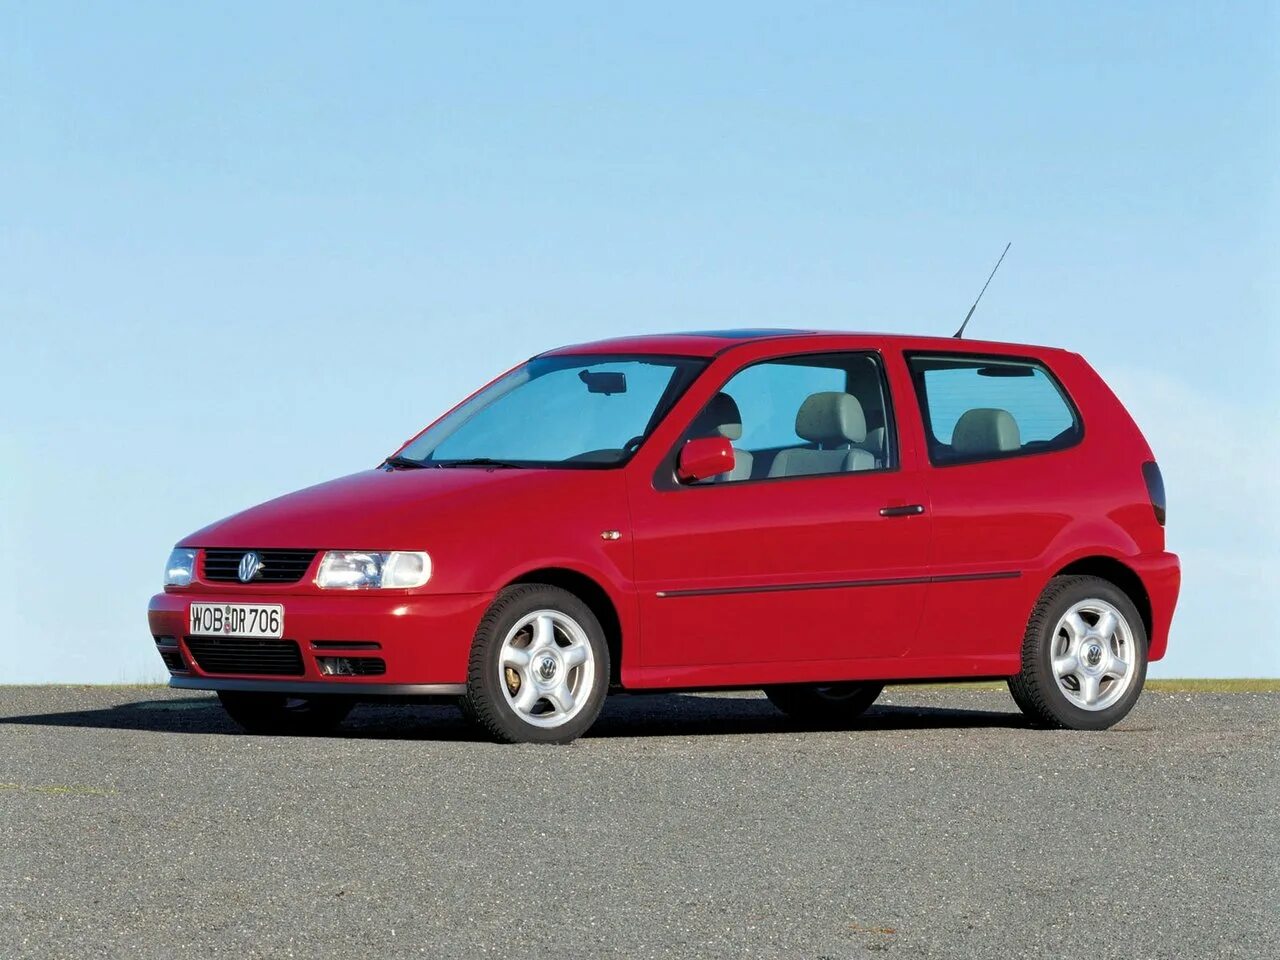 Volkswagen Polo, III, 1994 — 2002. Volkswagen Polo III. Volkswagen Polo 3 хэтчбек. Volkswagen Polo, III, 1994 — 2002, хетчбэк, 3 дв..